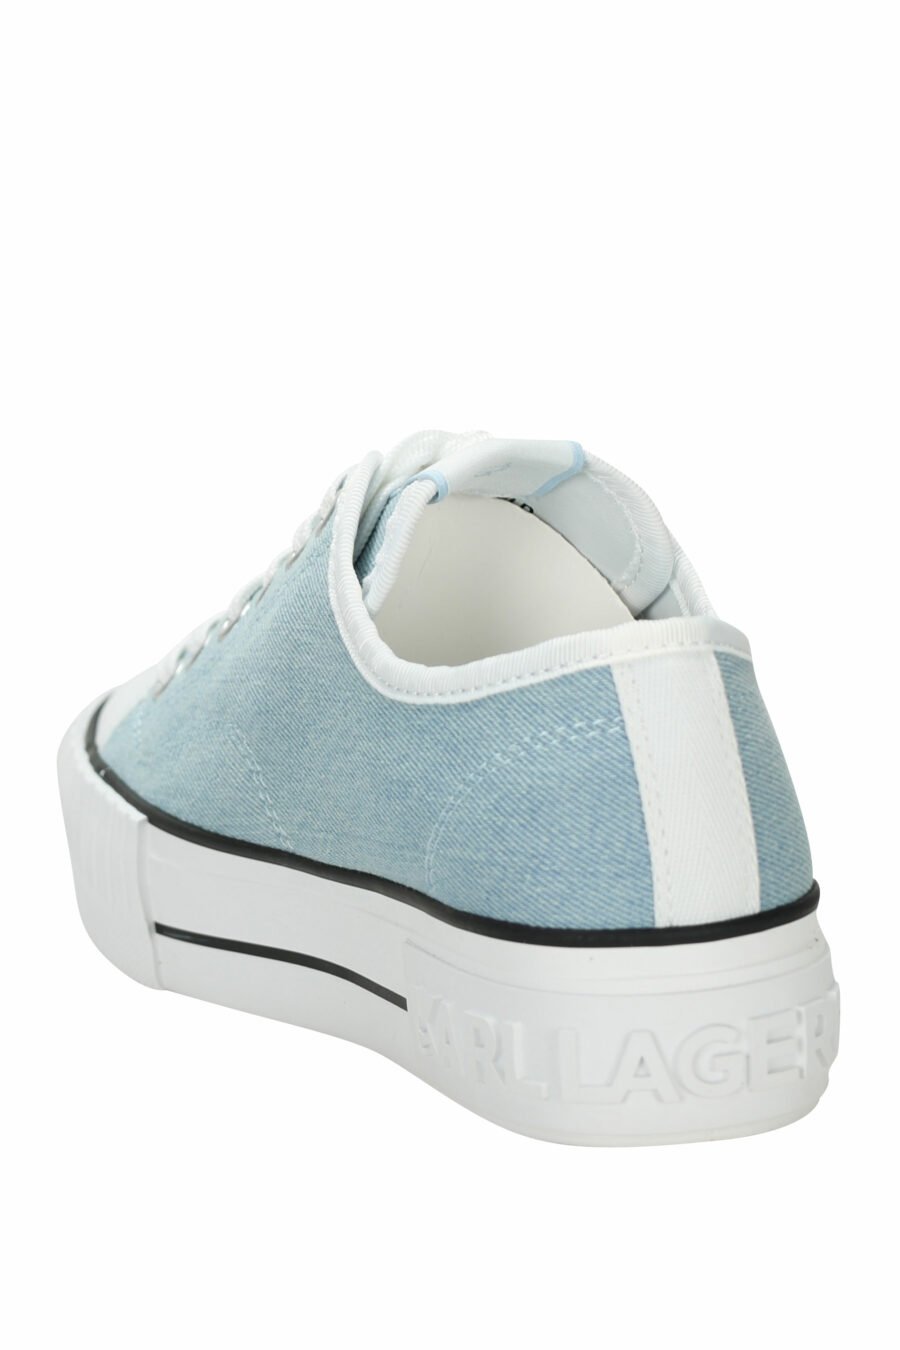 Zapatillas azul claro estilo "converse" con minilogo de goma "karl" - 5059529384691 3